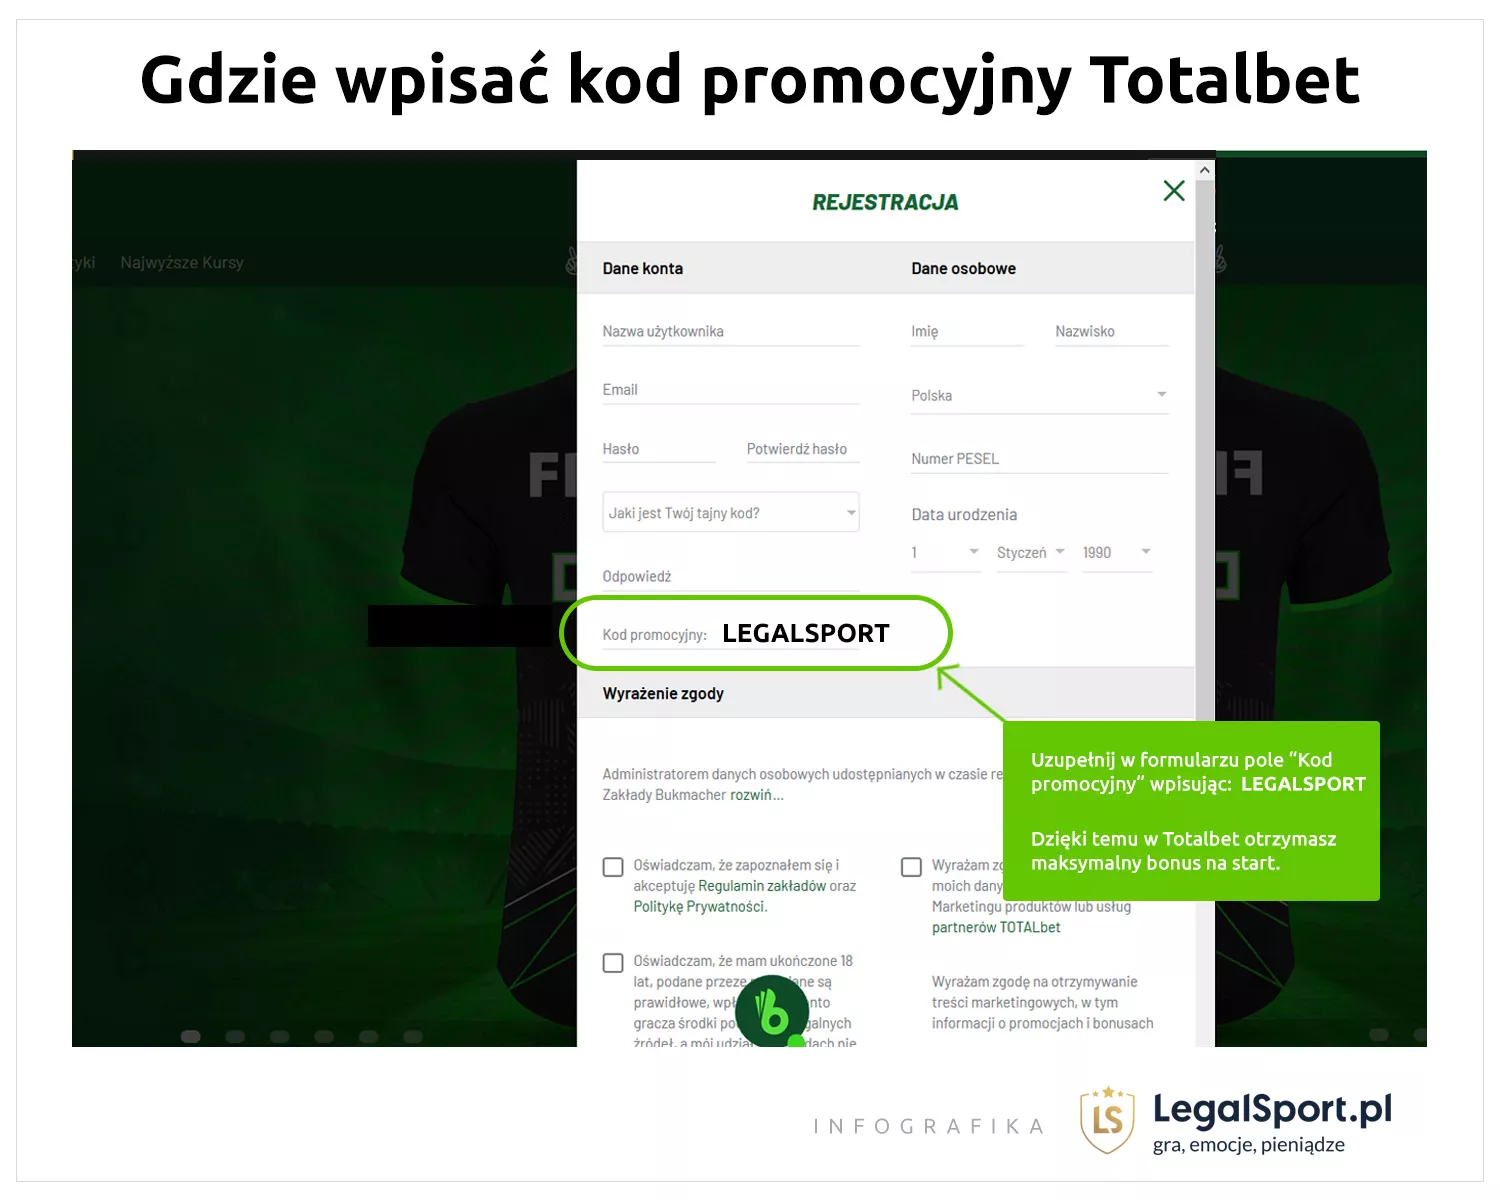 Informacja, gdzie wpisać kod promocyjny do bonusu na start od Totalbet.pl >: LEGALSPORT